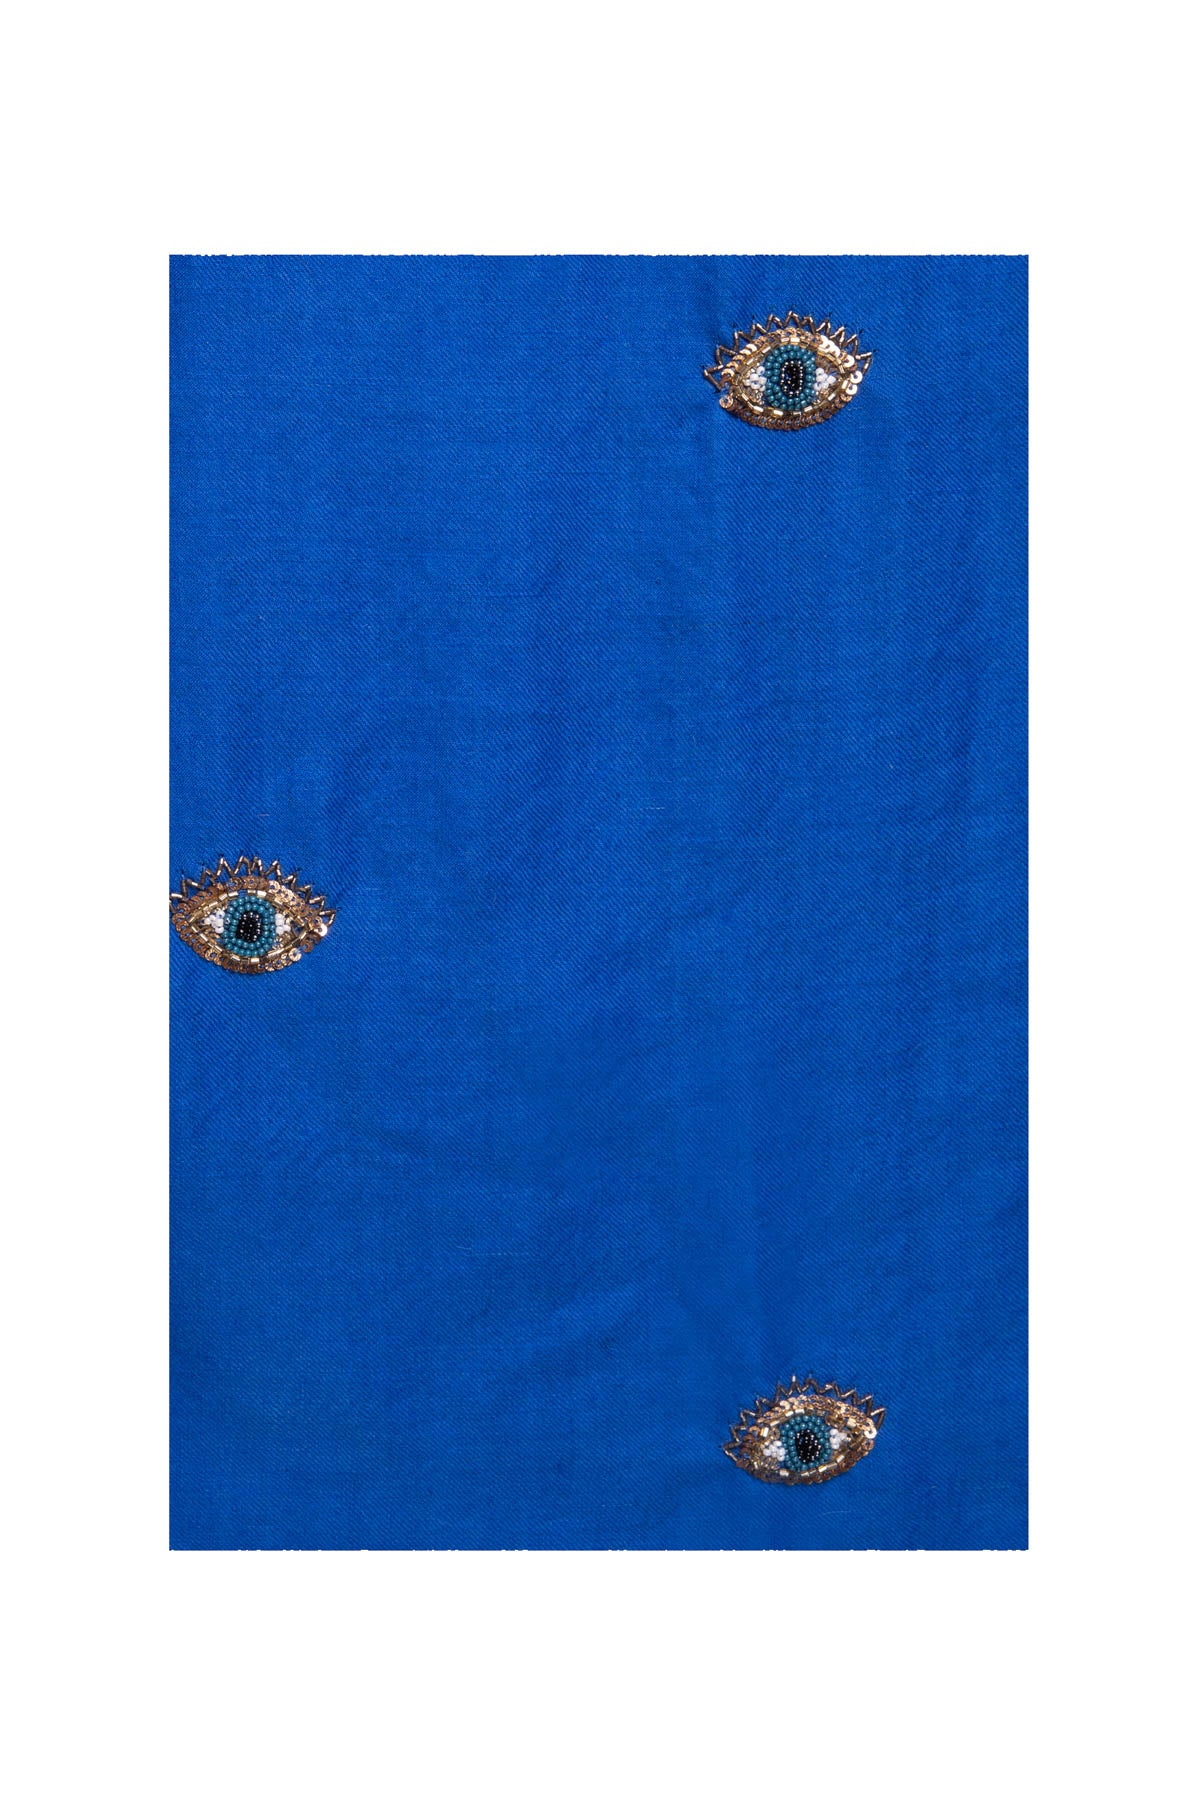 Eye Embroidered Pashmina Shawl - Azure Blue